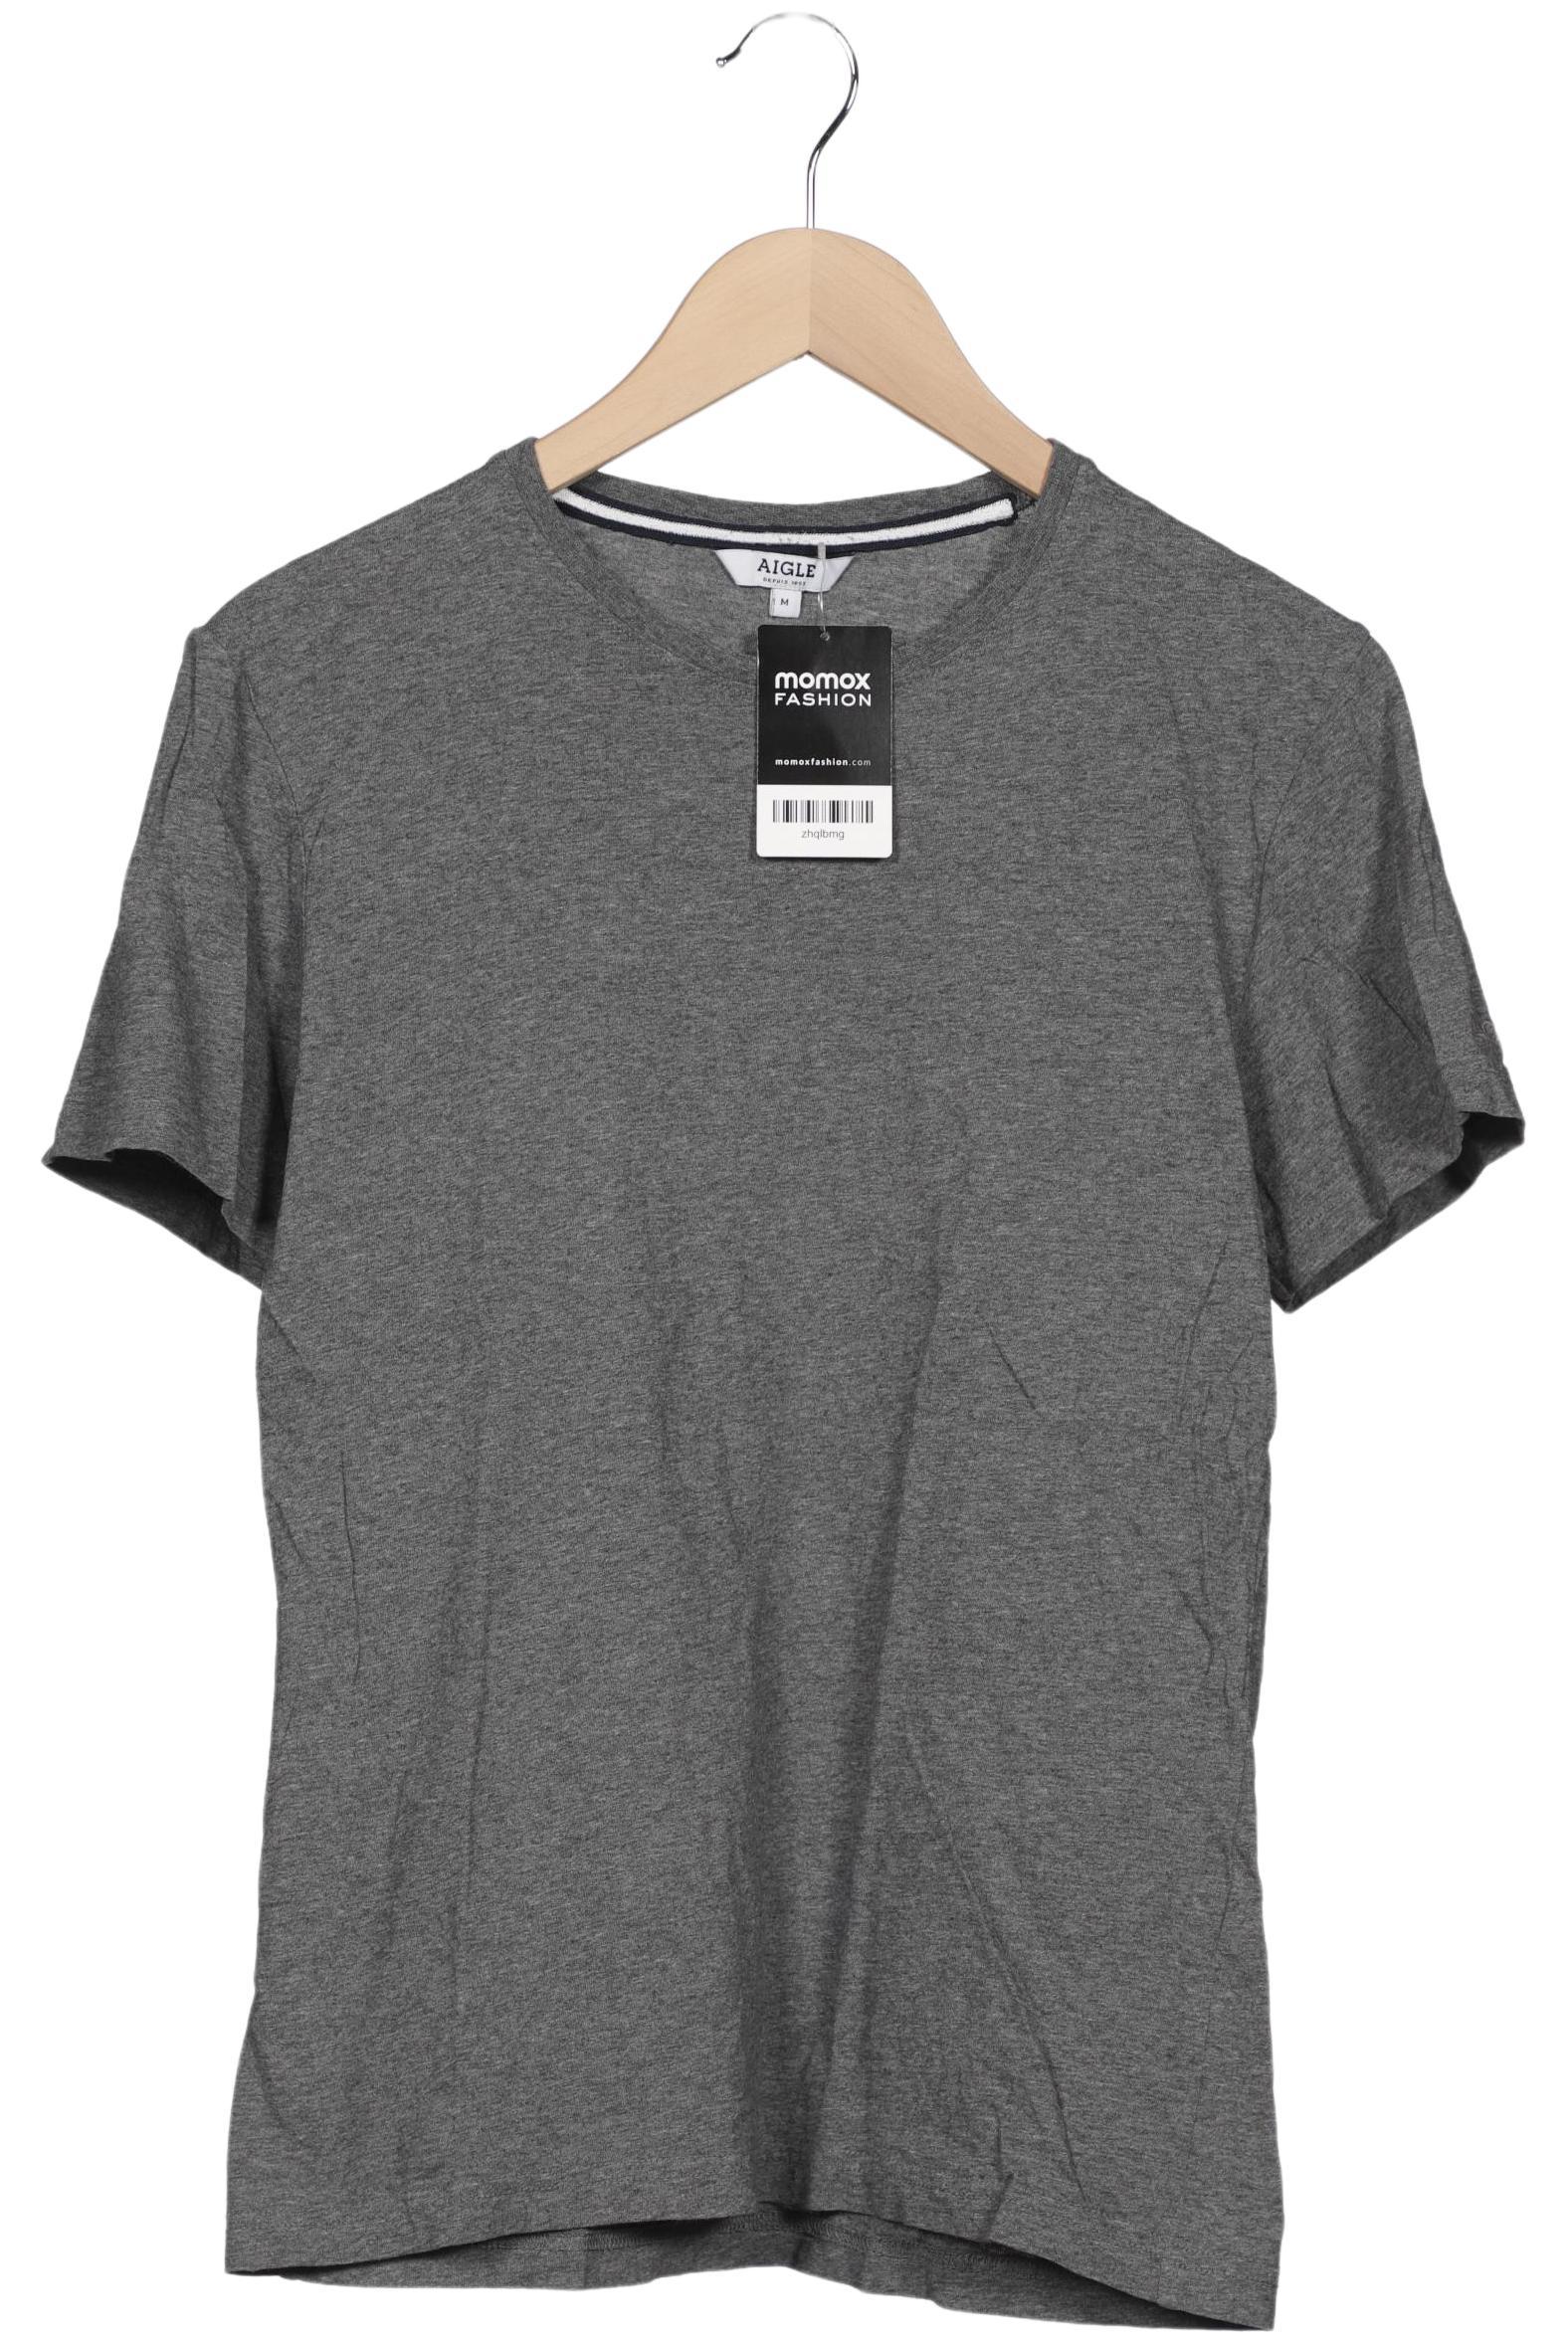 Aigle Herren T-Shirt, grau, Gr. 48 von Aigle